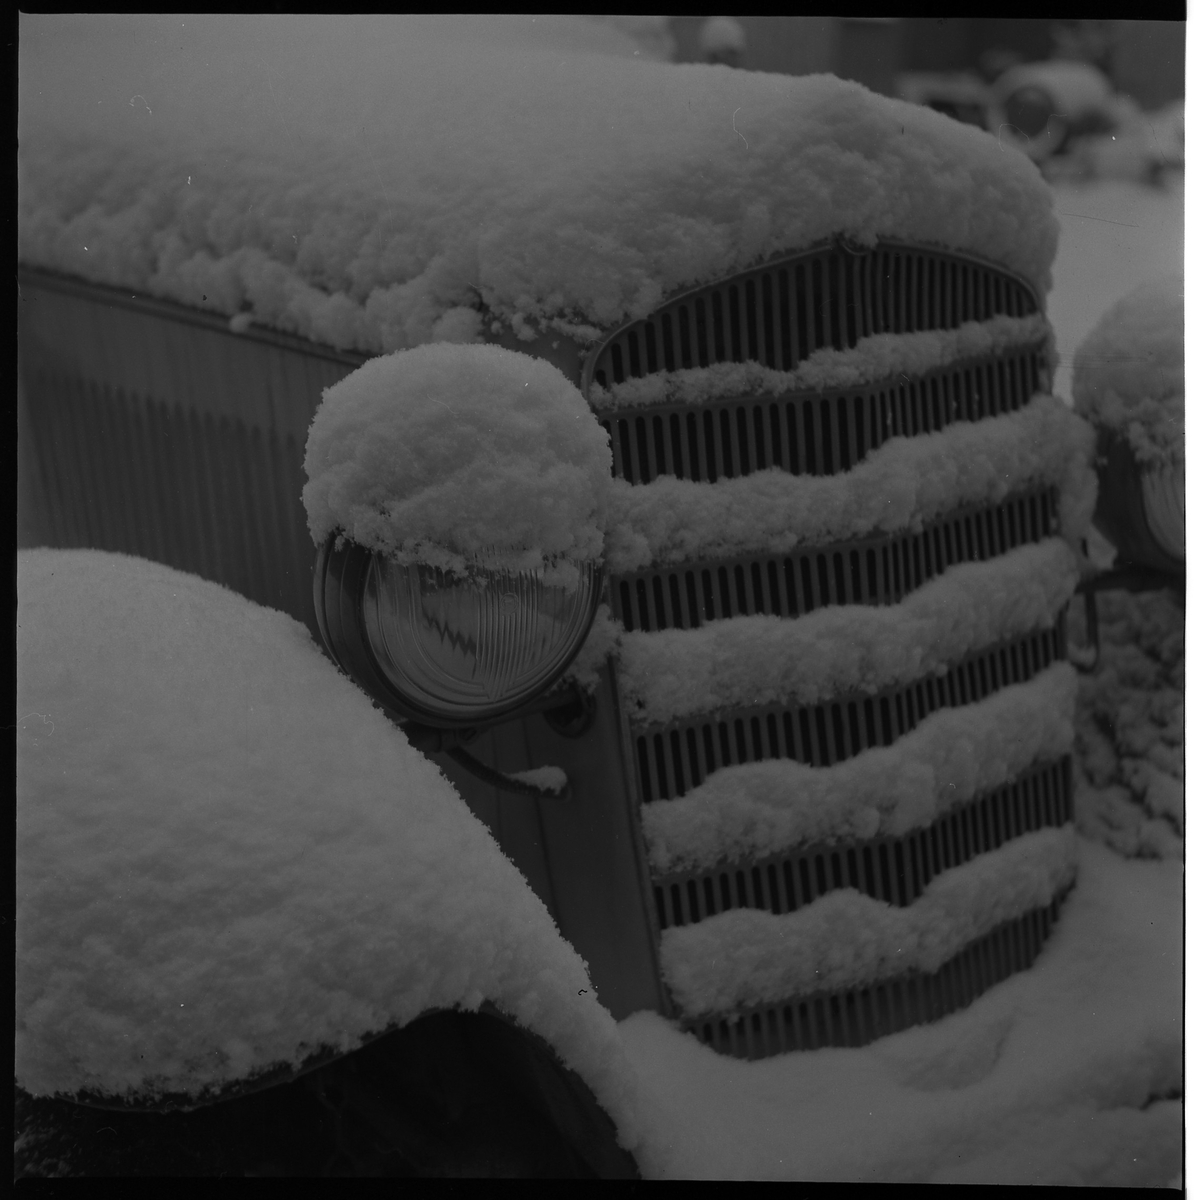 Bil på gård i kv Jägaren. Januari 1950